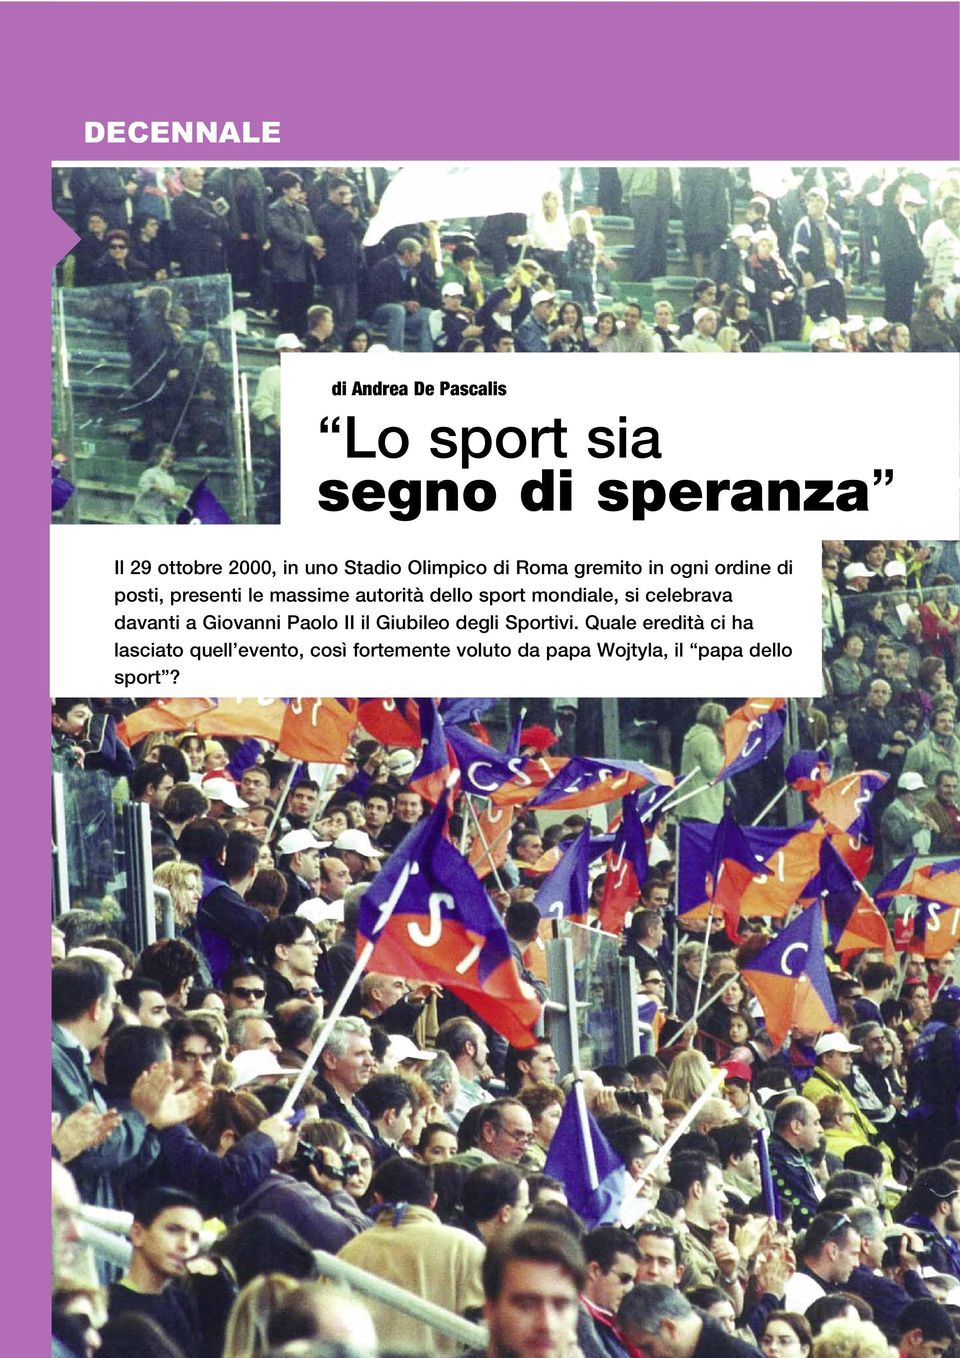 sport mondiale, si celebrava davanti a Giovanni Paolo II il Giubileo degli Sportivi.